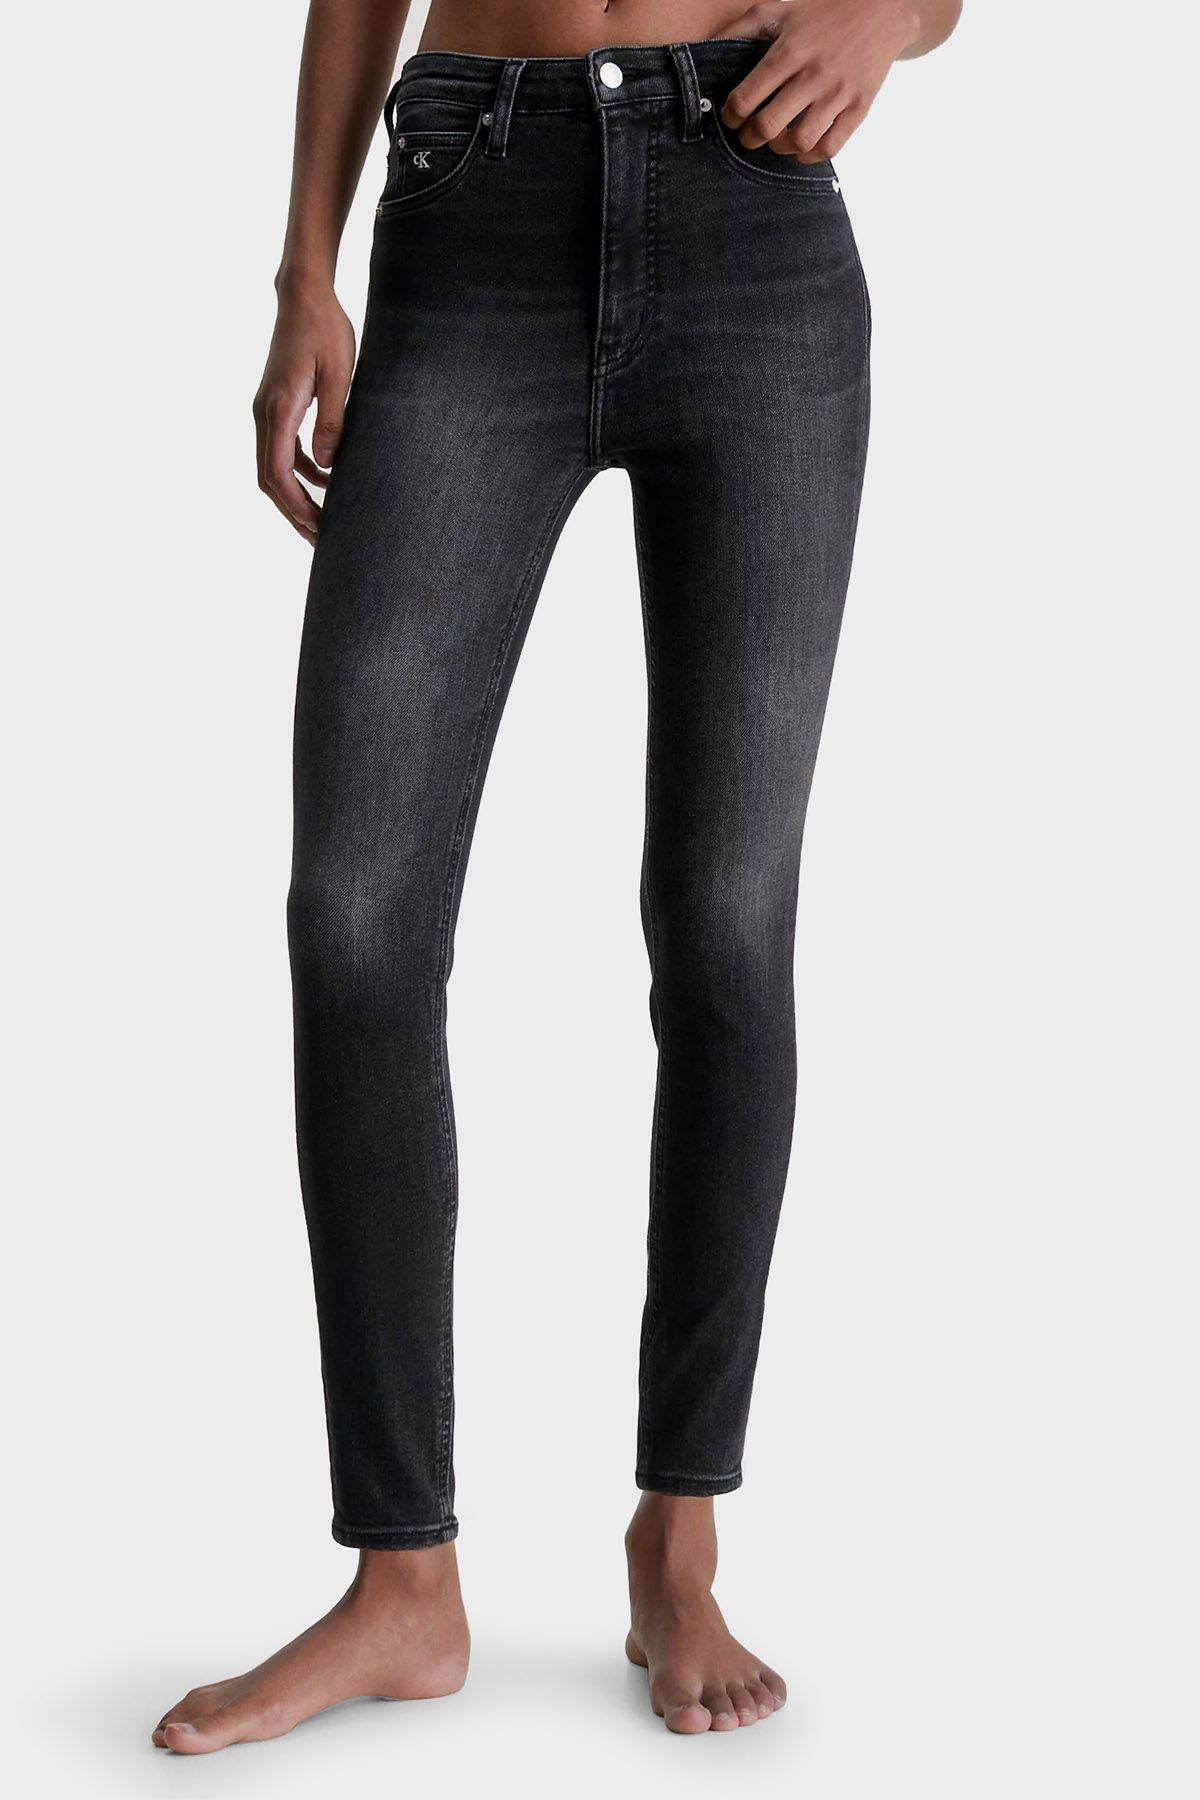 Calvin Klein Kadın Denim Kumaş Normal Bel Düz Model Lacivert Jeans J20J221254-1A4